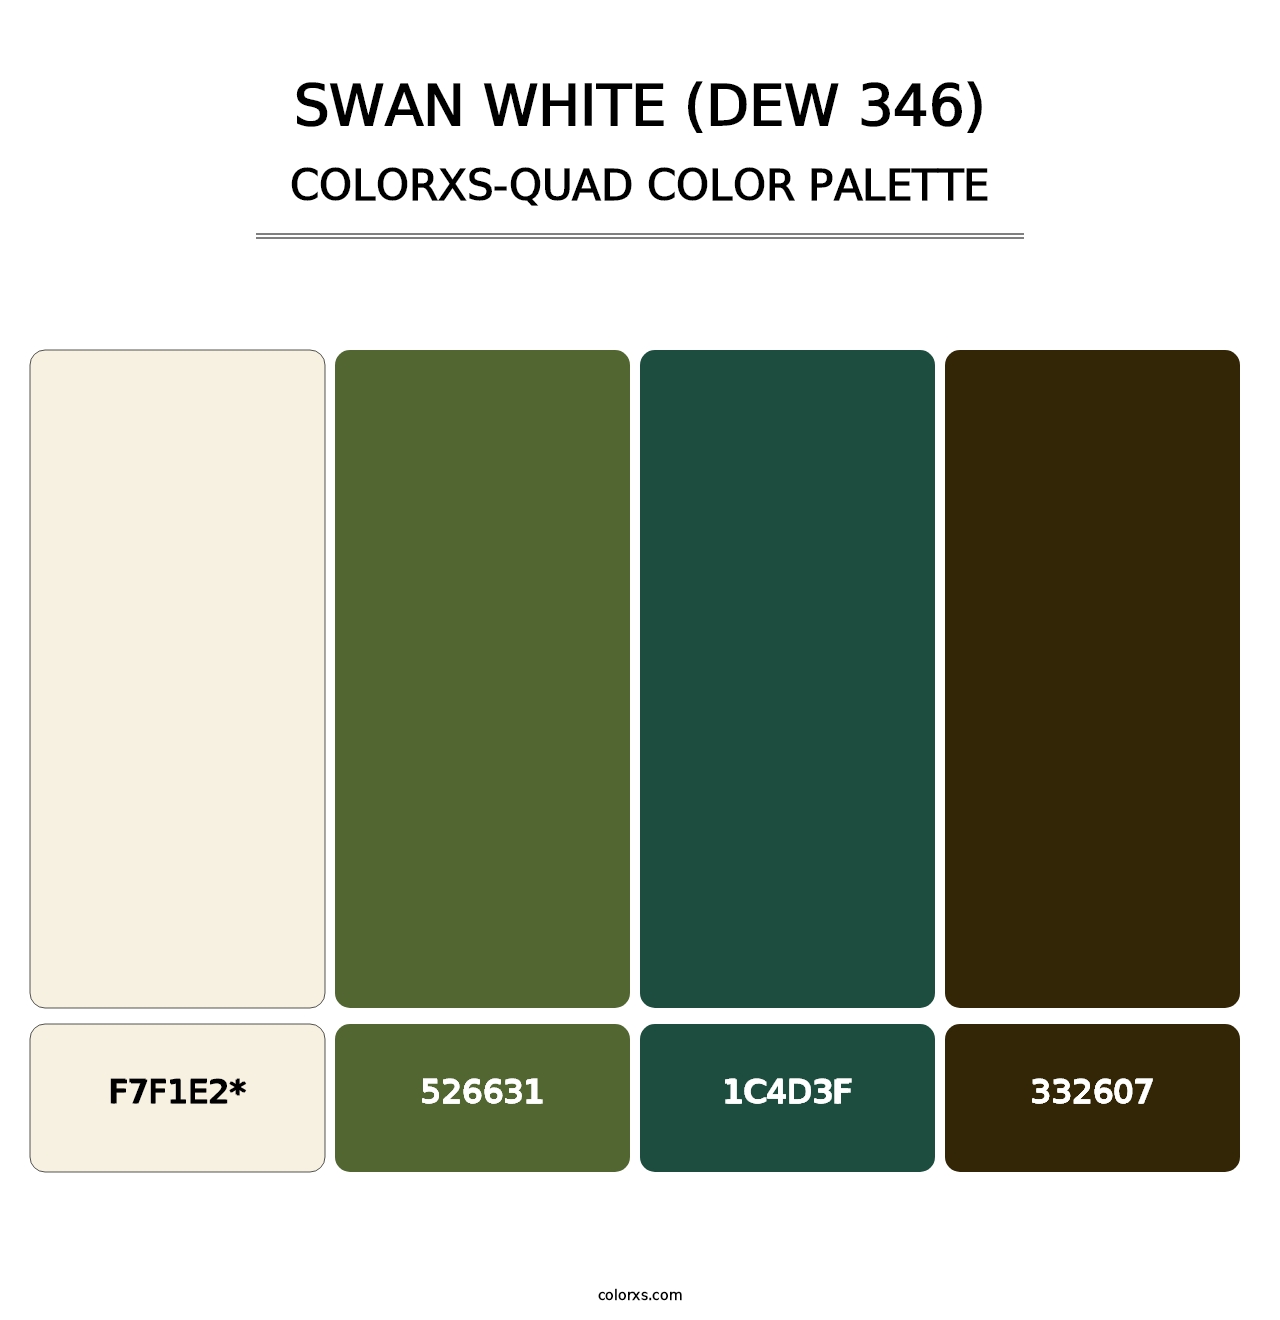 Swan White (DEW 346) - Colorxs Quad Palette